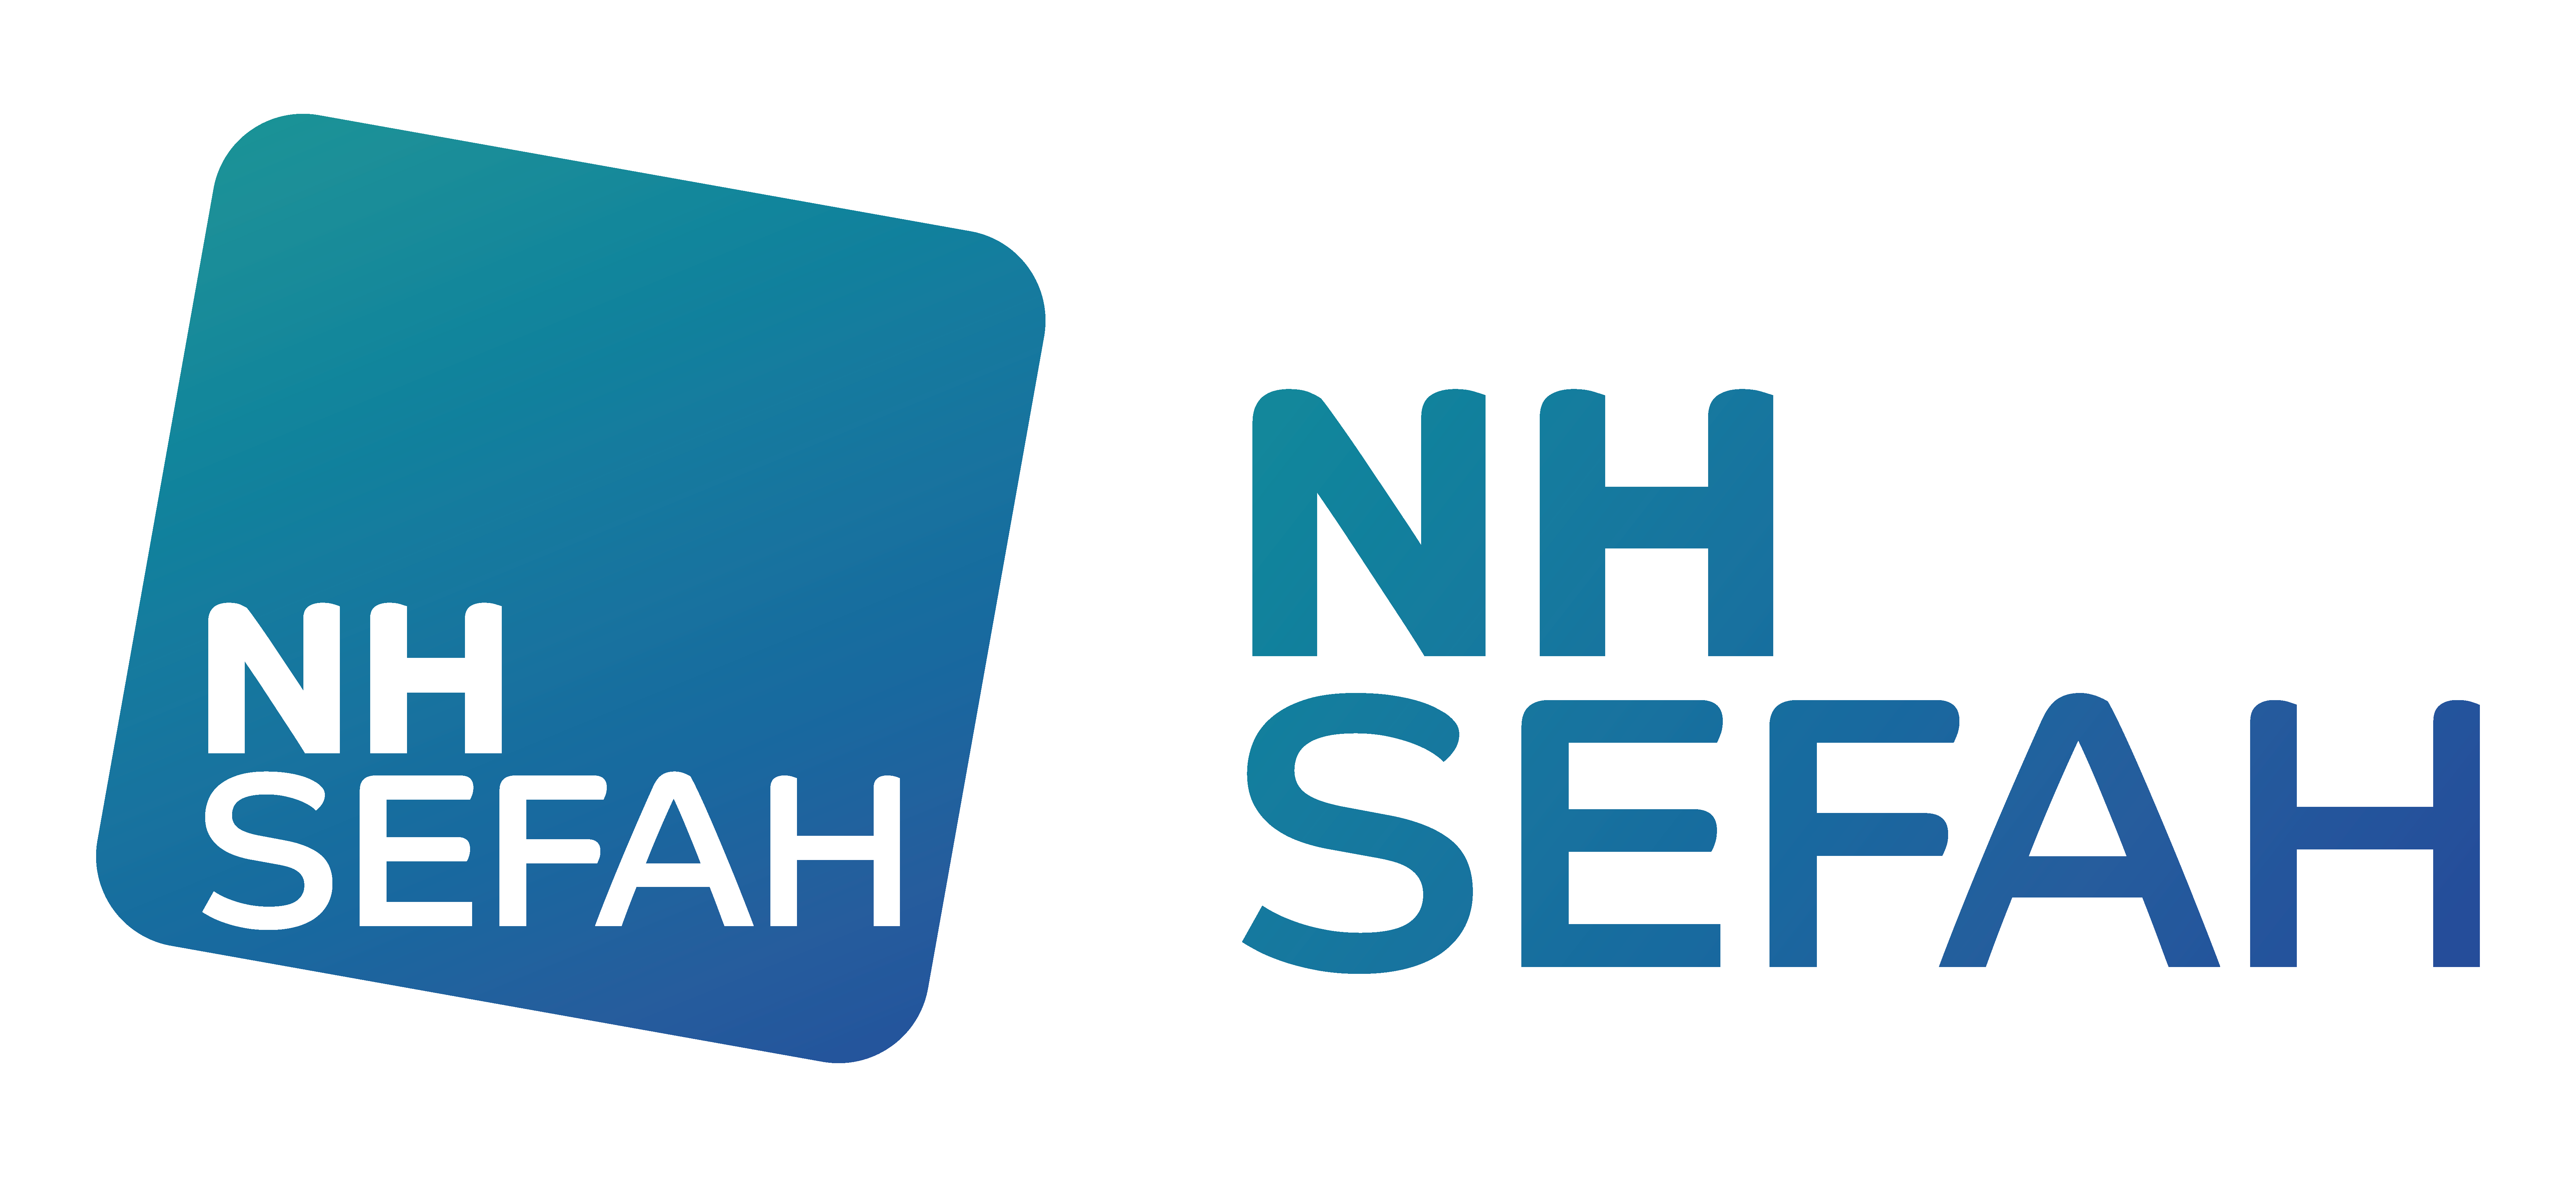 NH SEFAH basé en Lozère fabricant tripode et vérin aéronautique